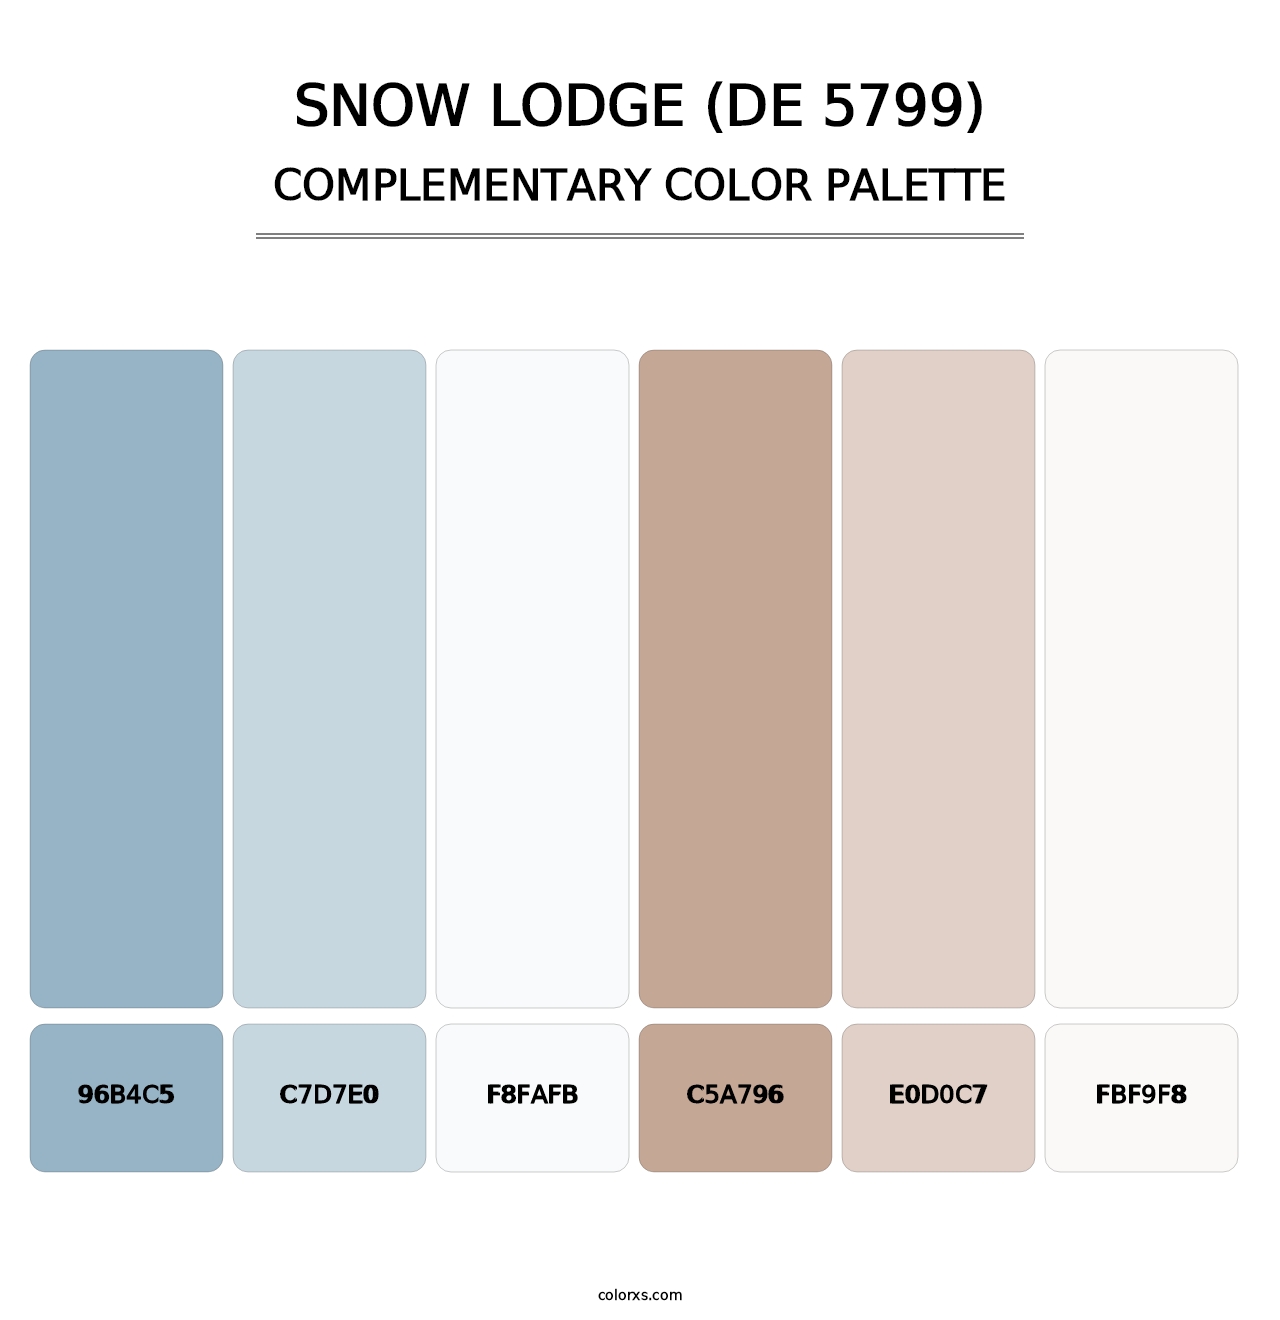 Snow Lodge (DE 5799) - Complementary Color Palette